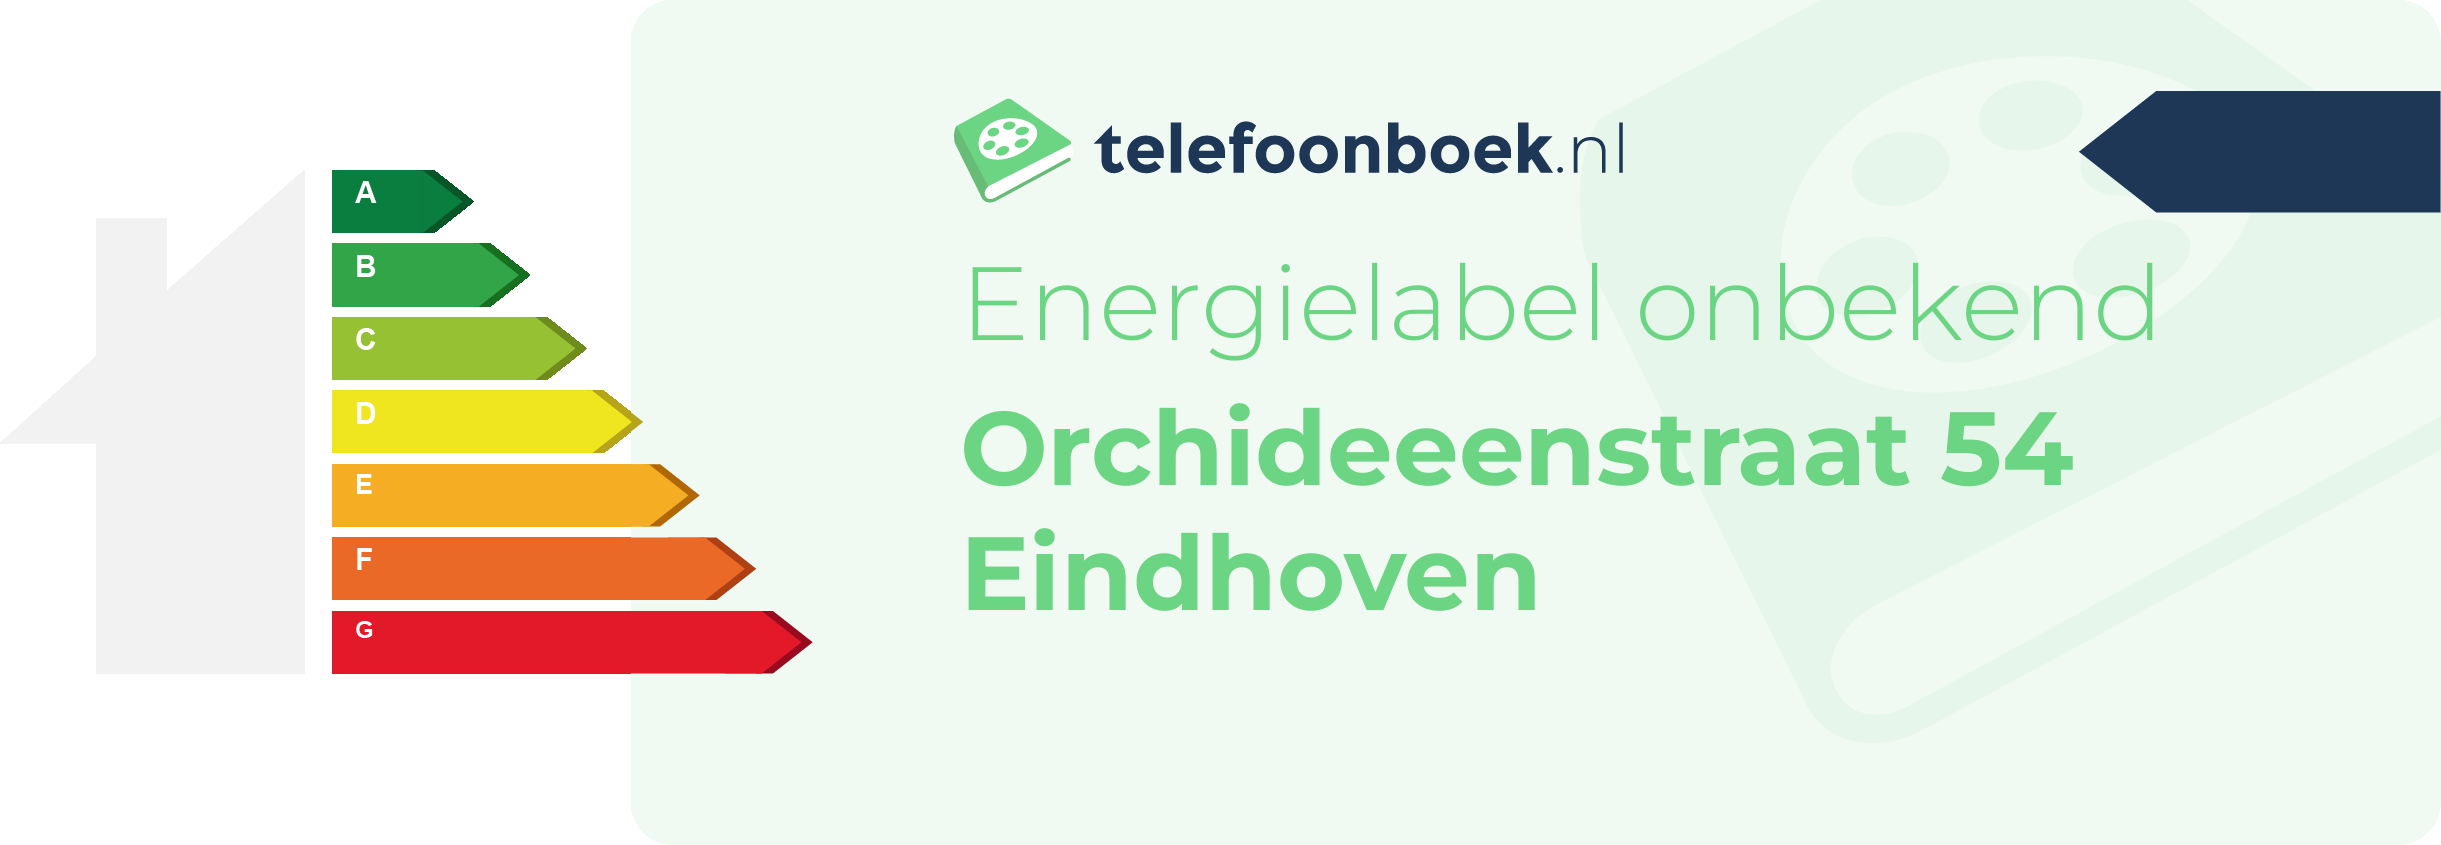 Energielabel Orchideeenstraat 54 Eindhoven